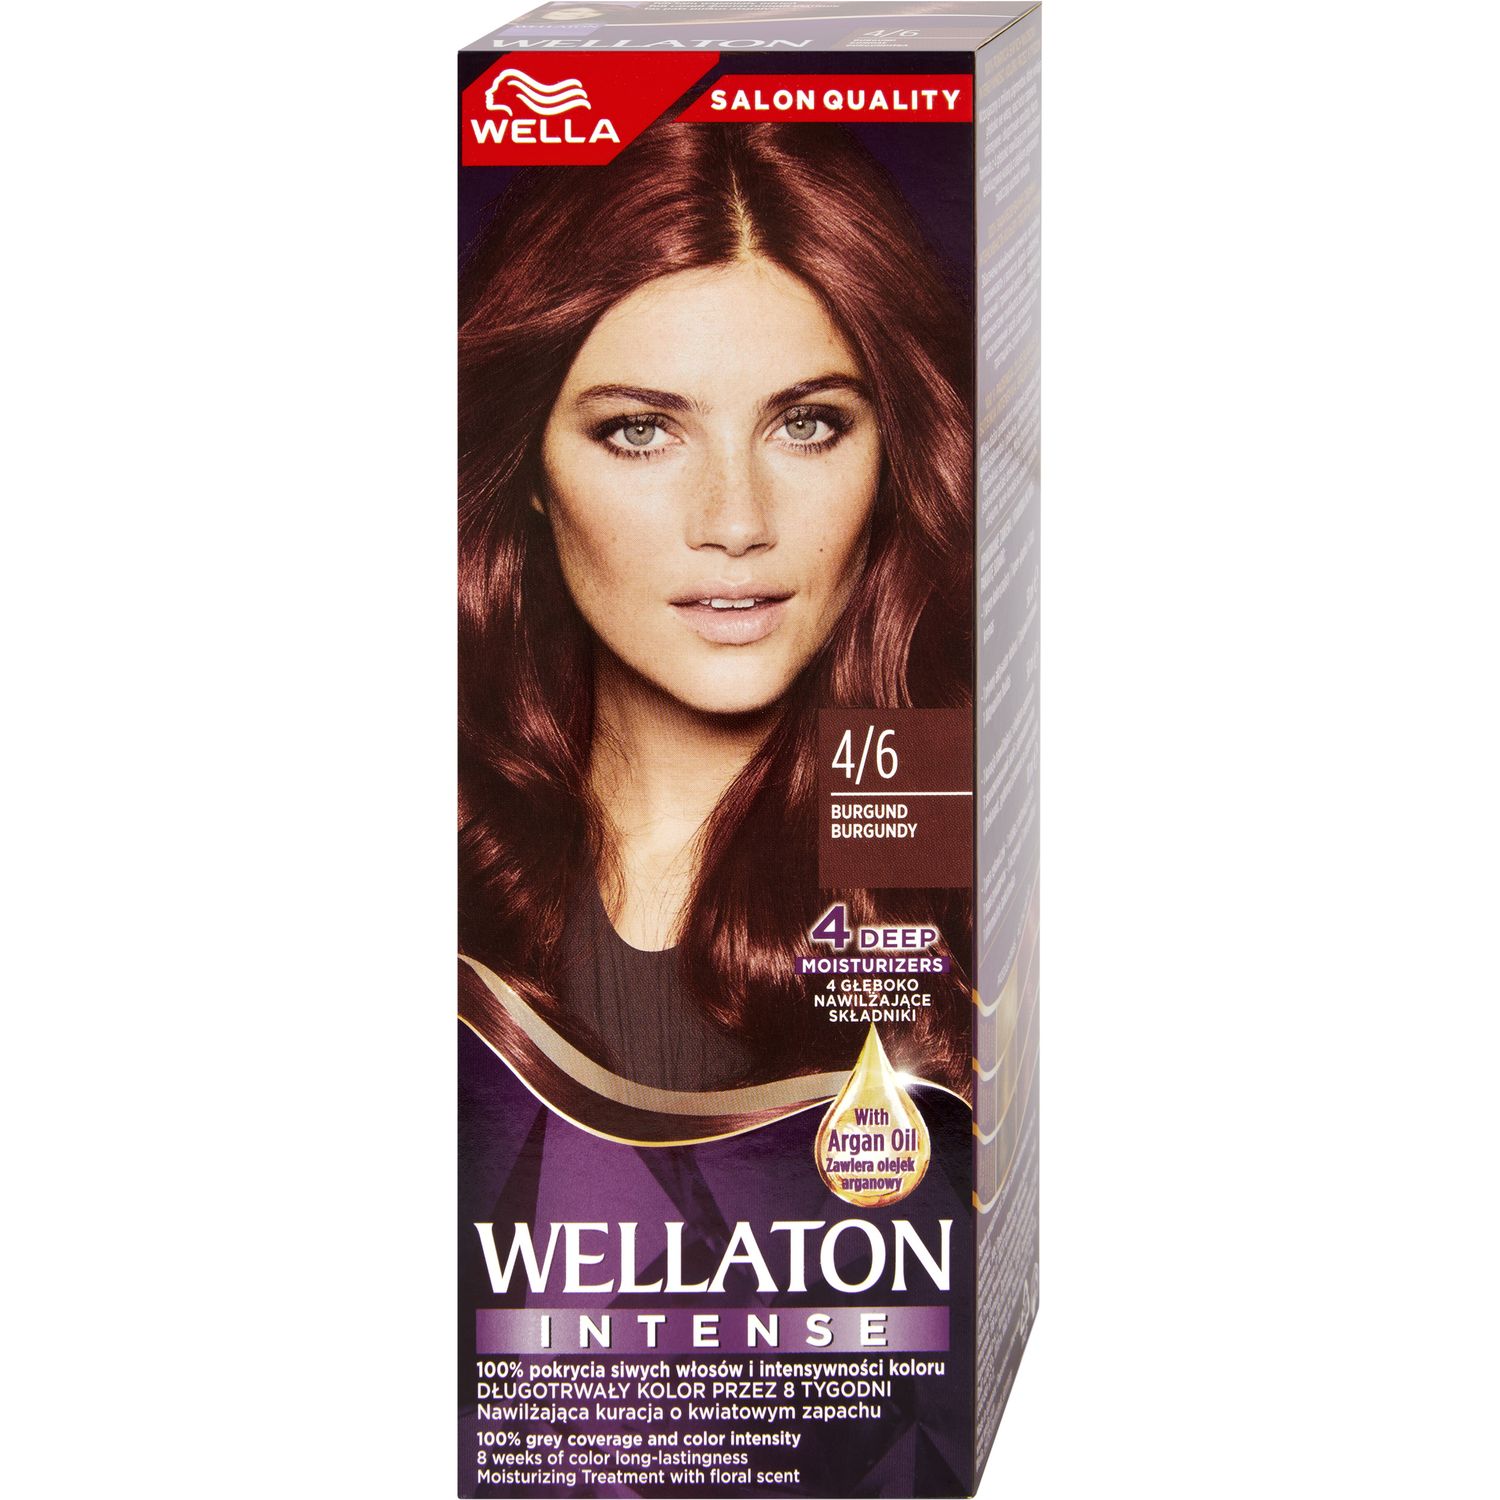 Стійка крем-фарба для волосся Wellaton, відтінок 4/6 (божоле), 110 мл - фото 1